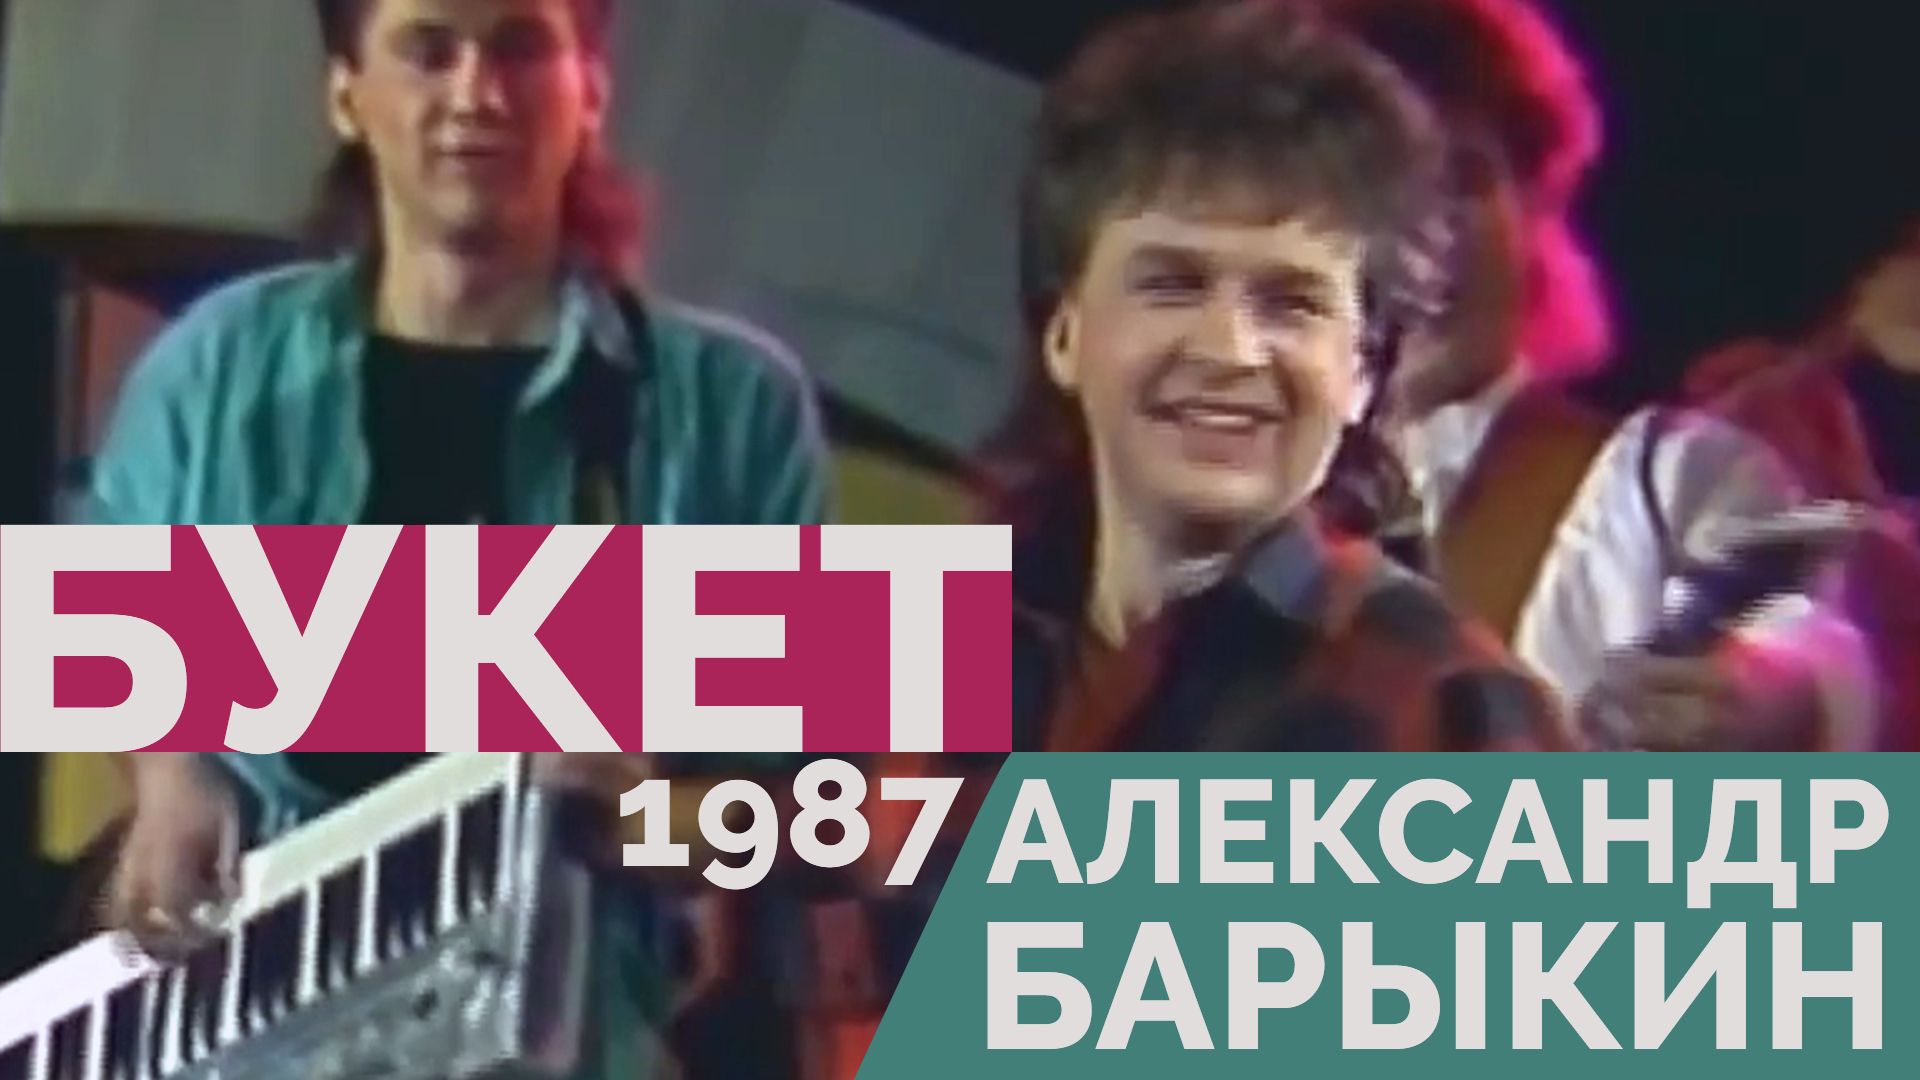 Александр Барыкин - Букет,1987